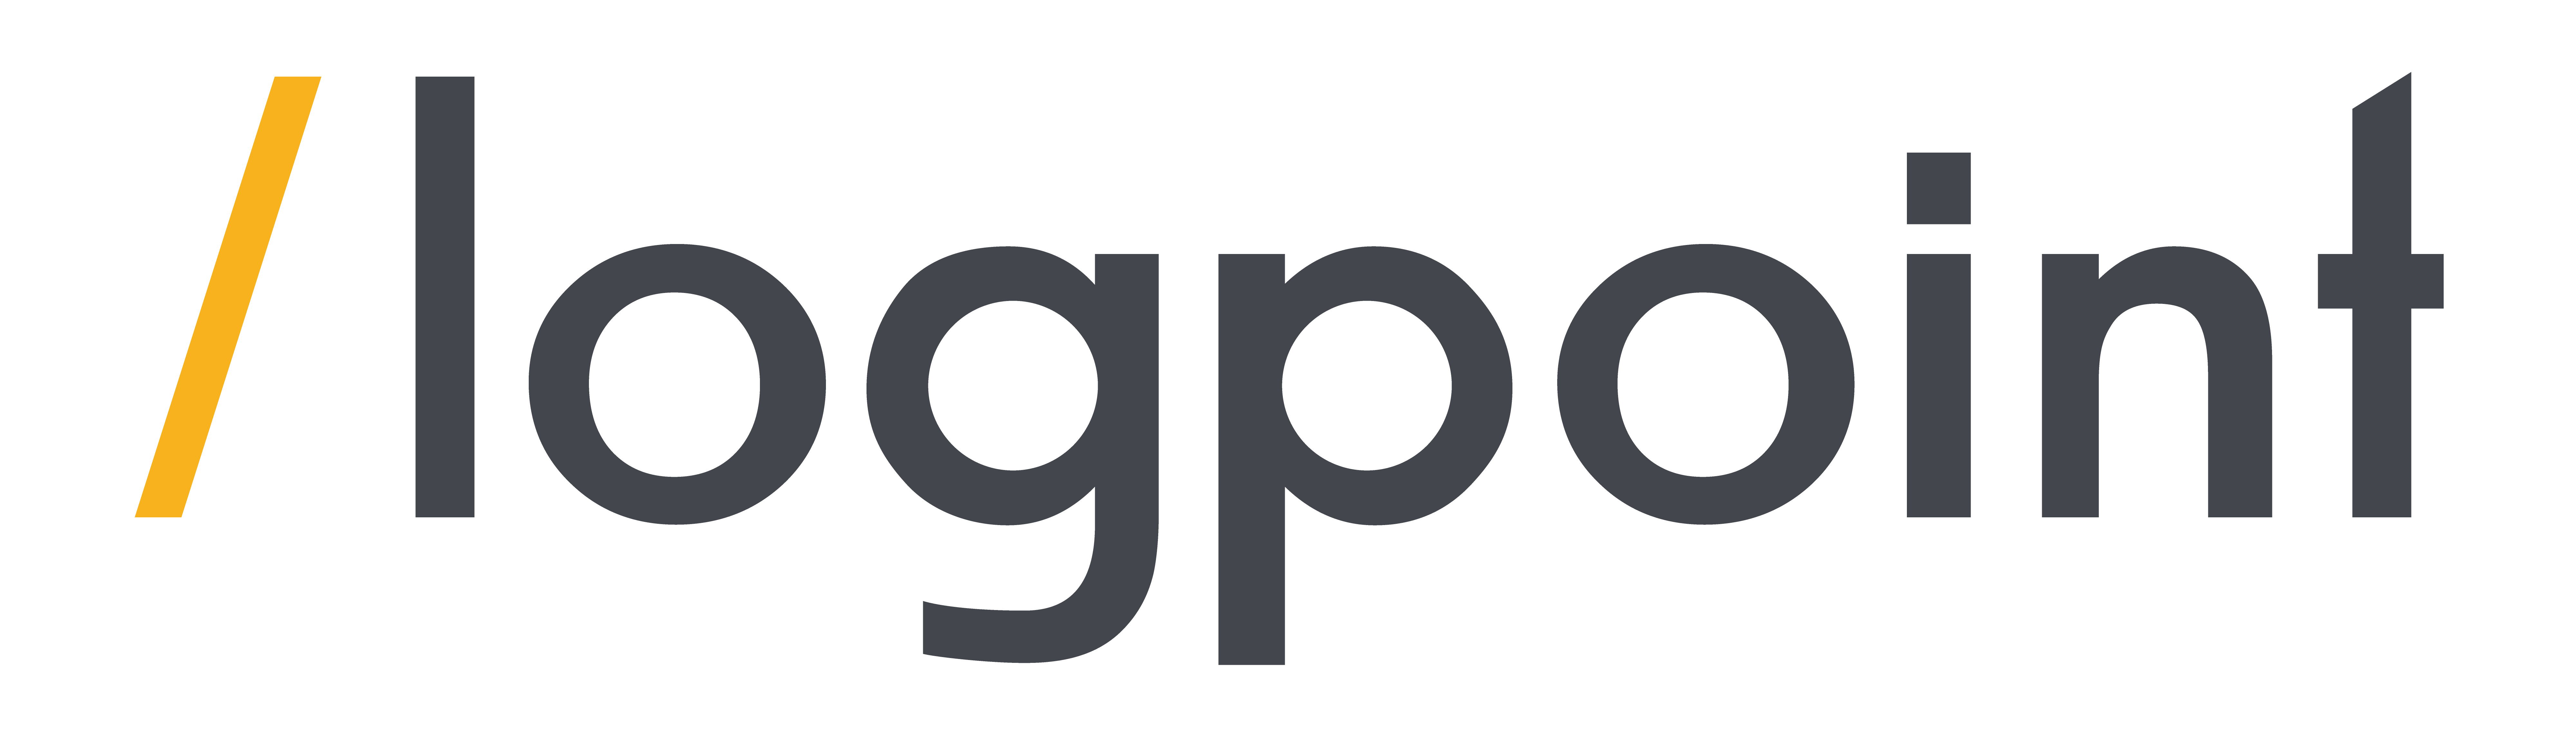 lp_logo.png